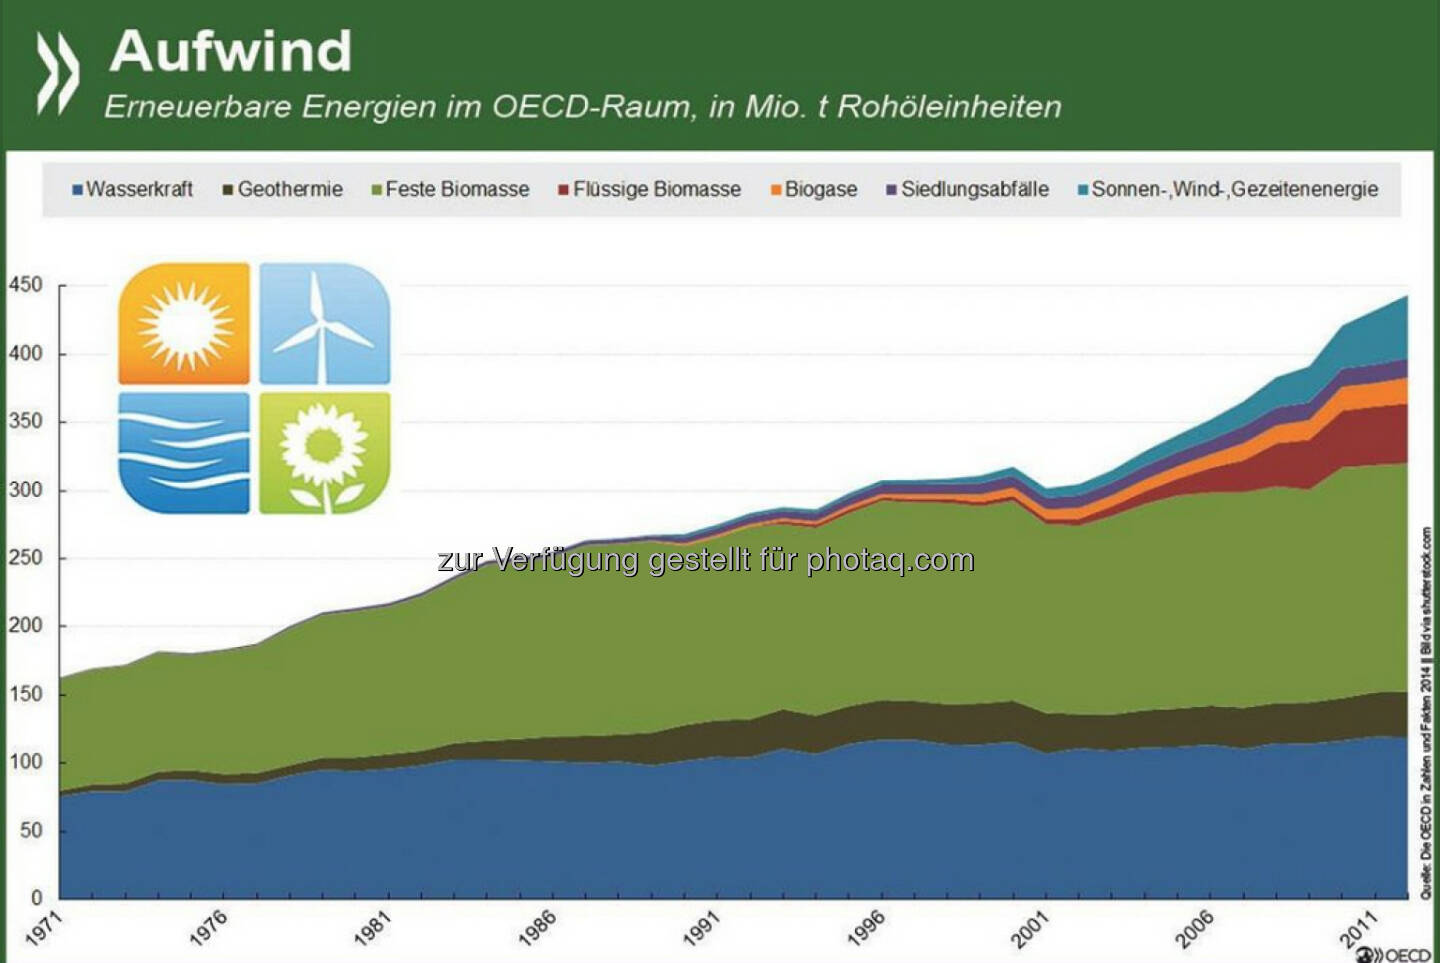 Aufwind: In den OECD-Ländern hat das Aufkommen an erneuerbaren Energien zwischen 1971 und 2012 um durchschnittlich 2,5 Prozent jährlich zugenommen. Die größte Zuwachsrate gab es bei Sonnen- und Windenergie, insgesamt hat die Biomasse den größten Anteil.
Wie sich die Erneuerbaren in einzelnen OECD- und G20-Ländern entwickelt haben, seht Ihr unter: http://bit.ly/1CiLFCo